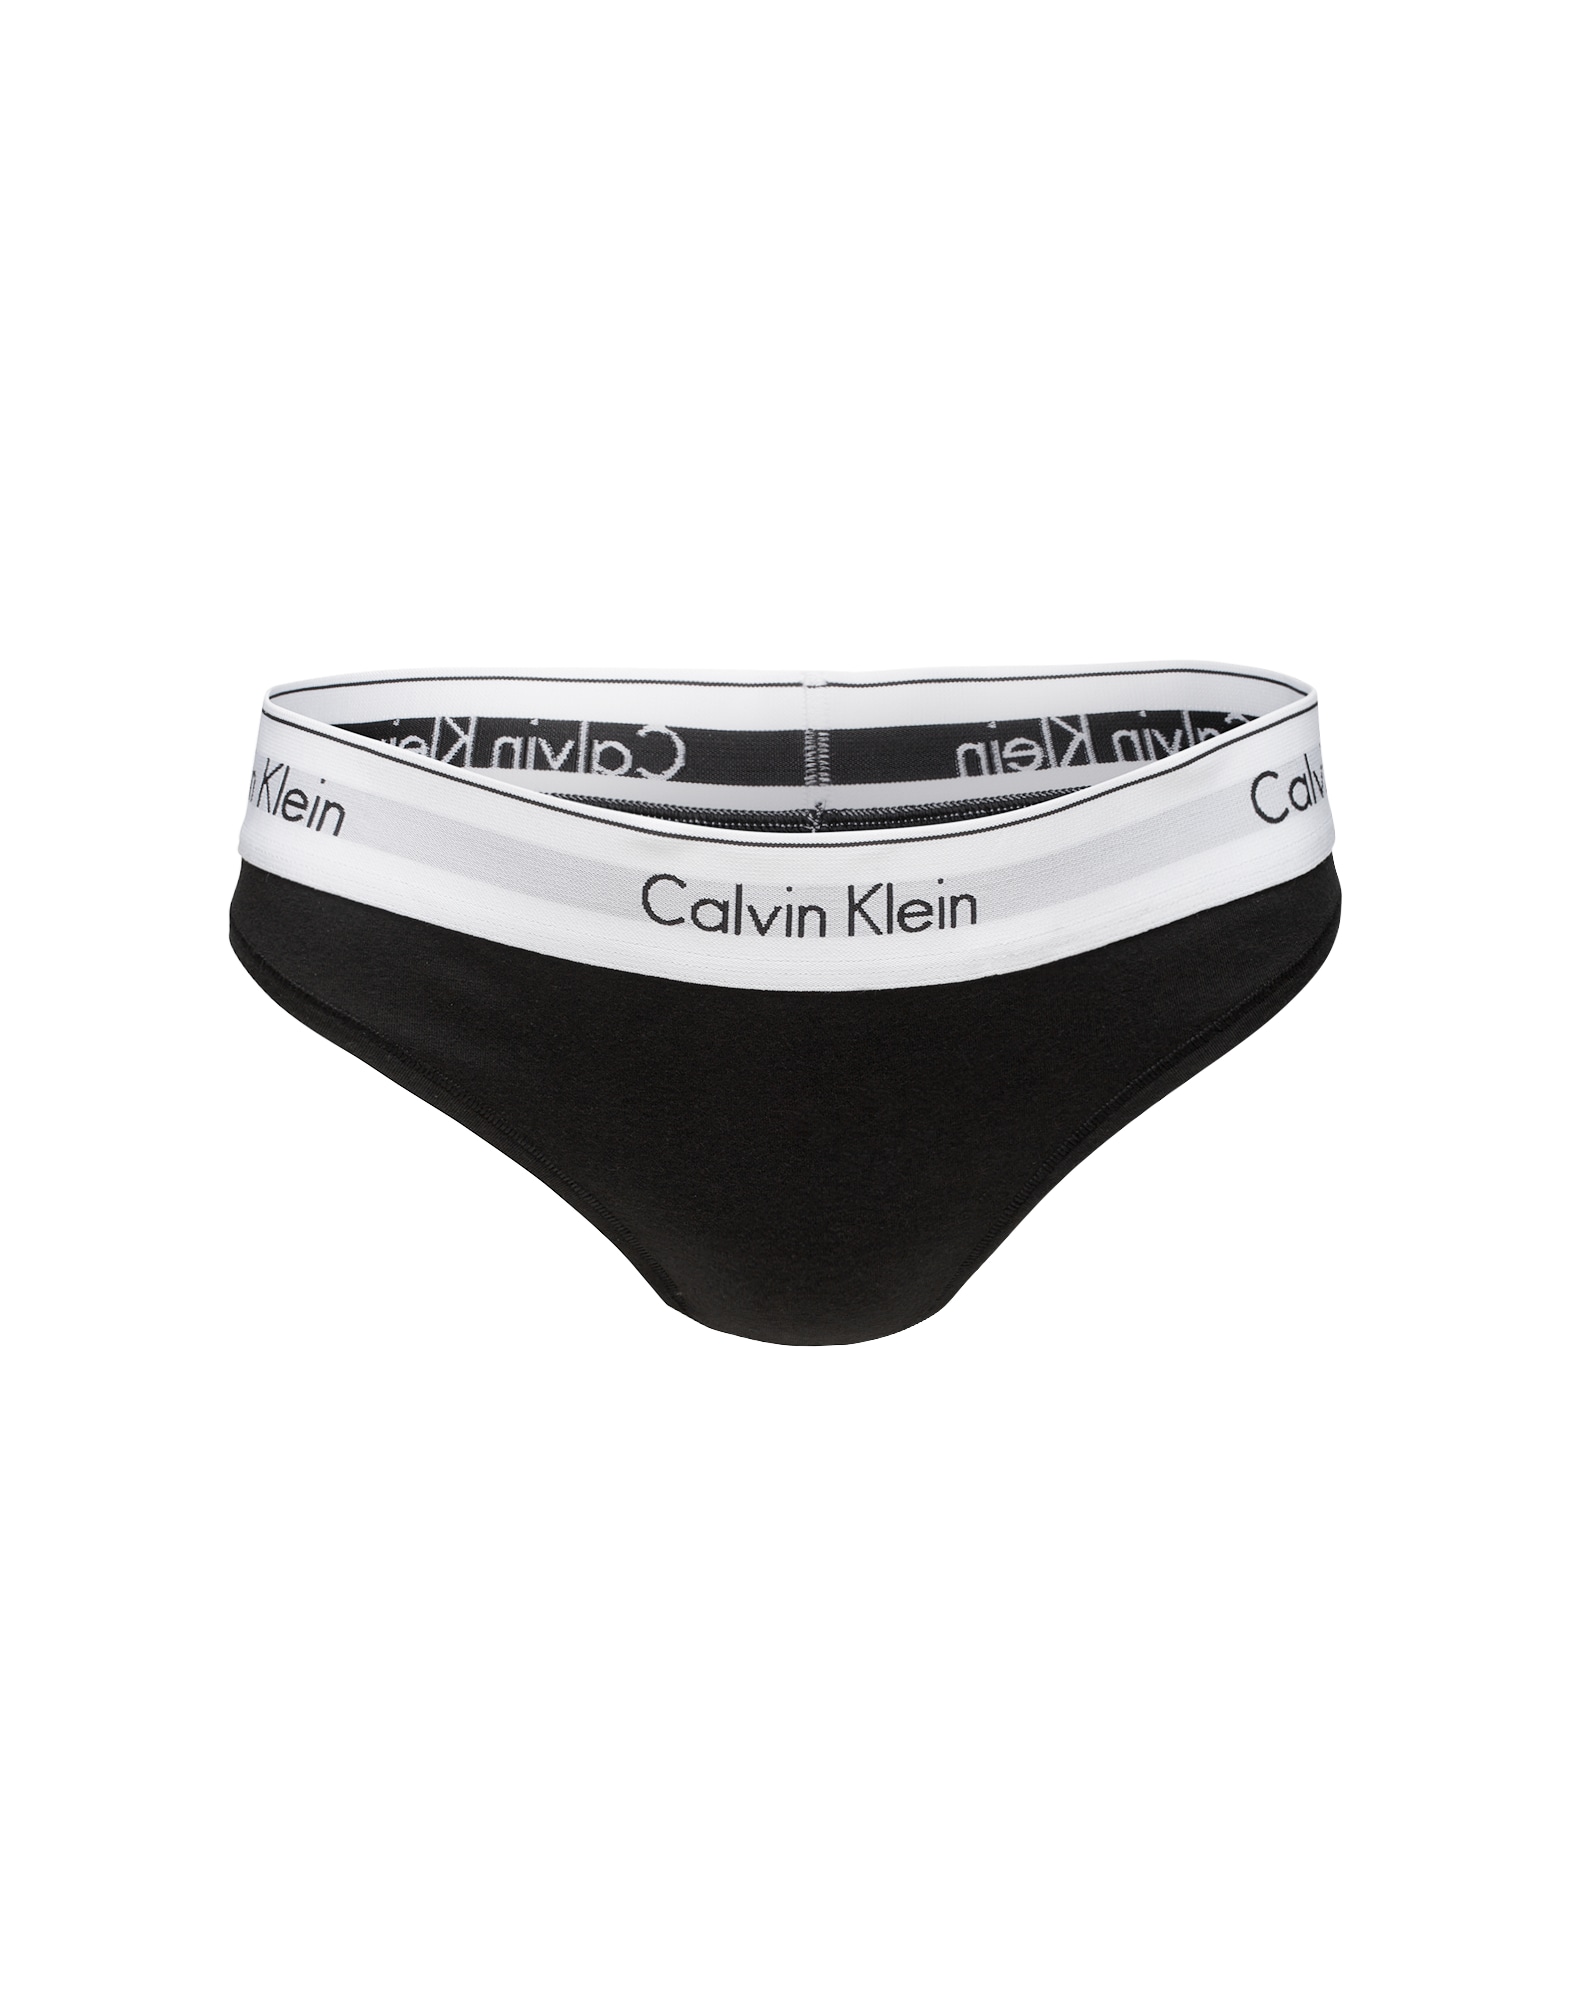 Tangá sivá čierna biela Calvin Klein Underwear